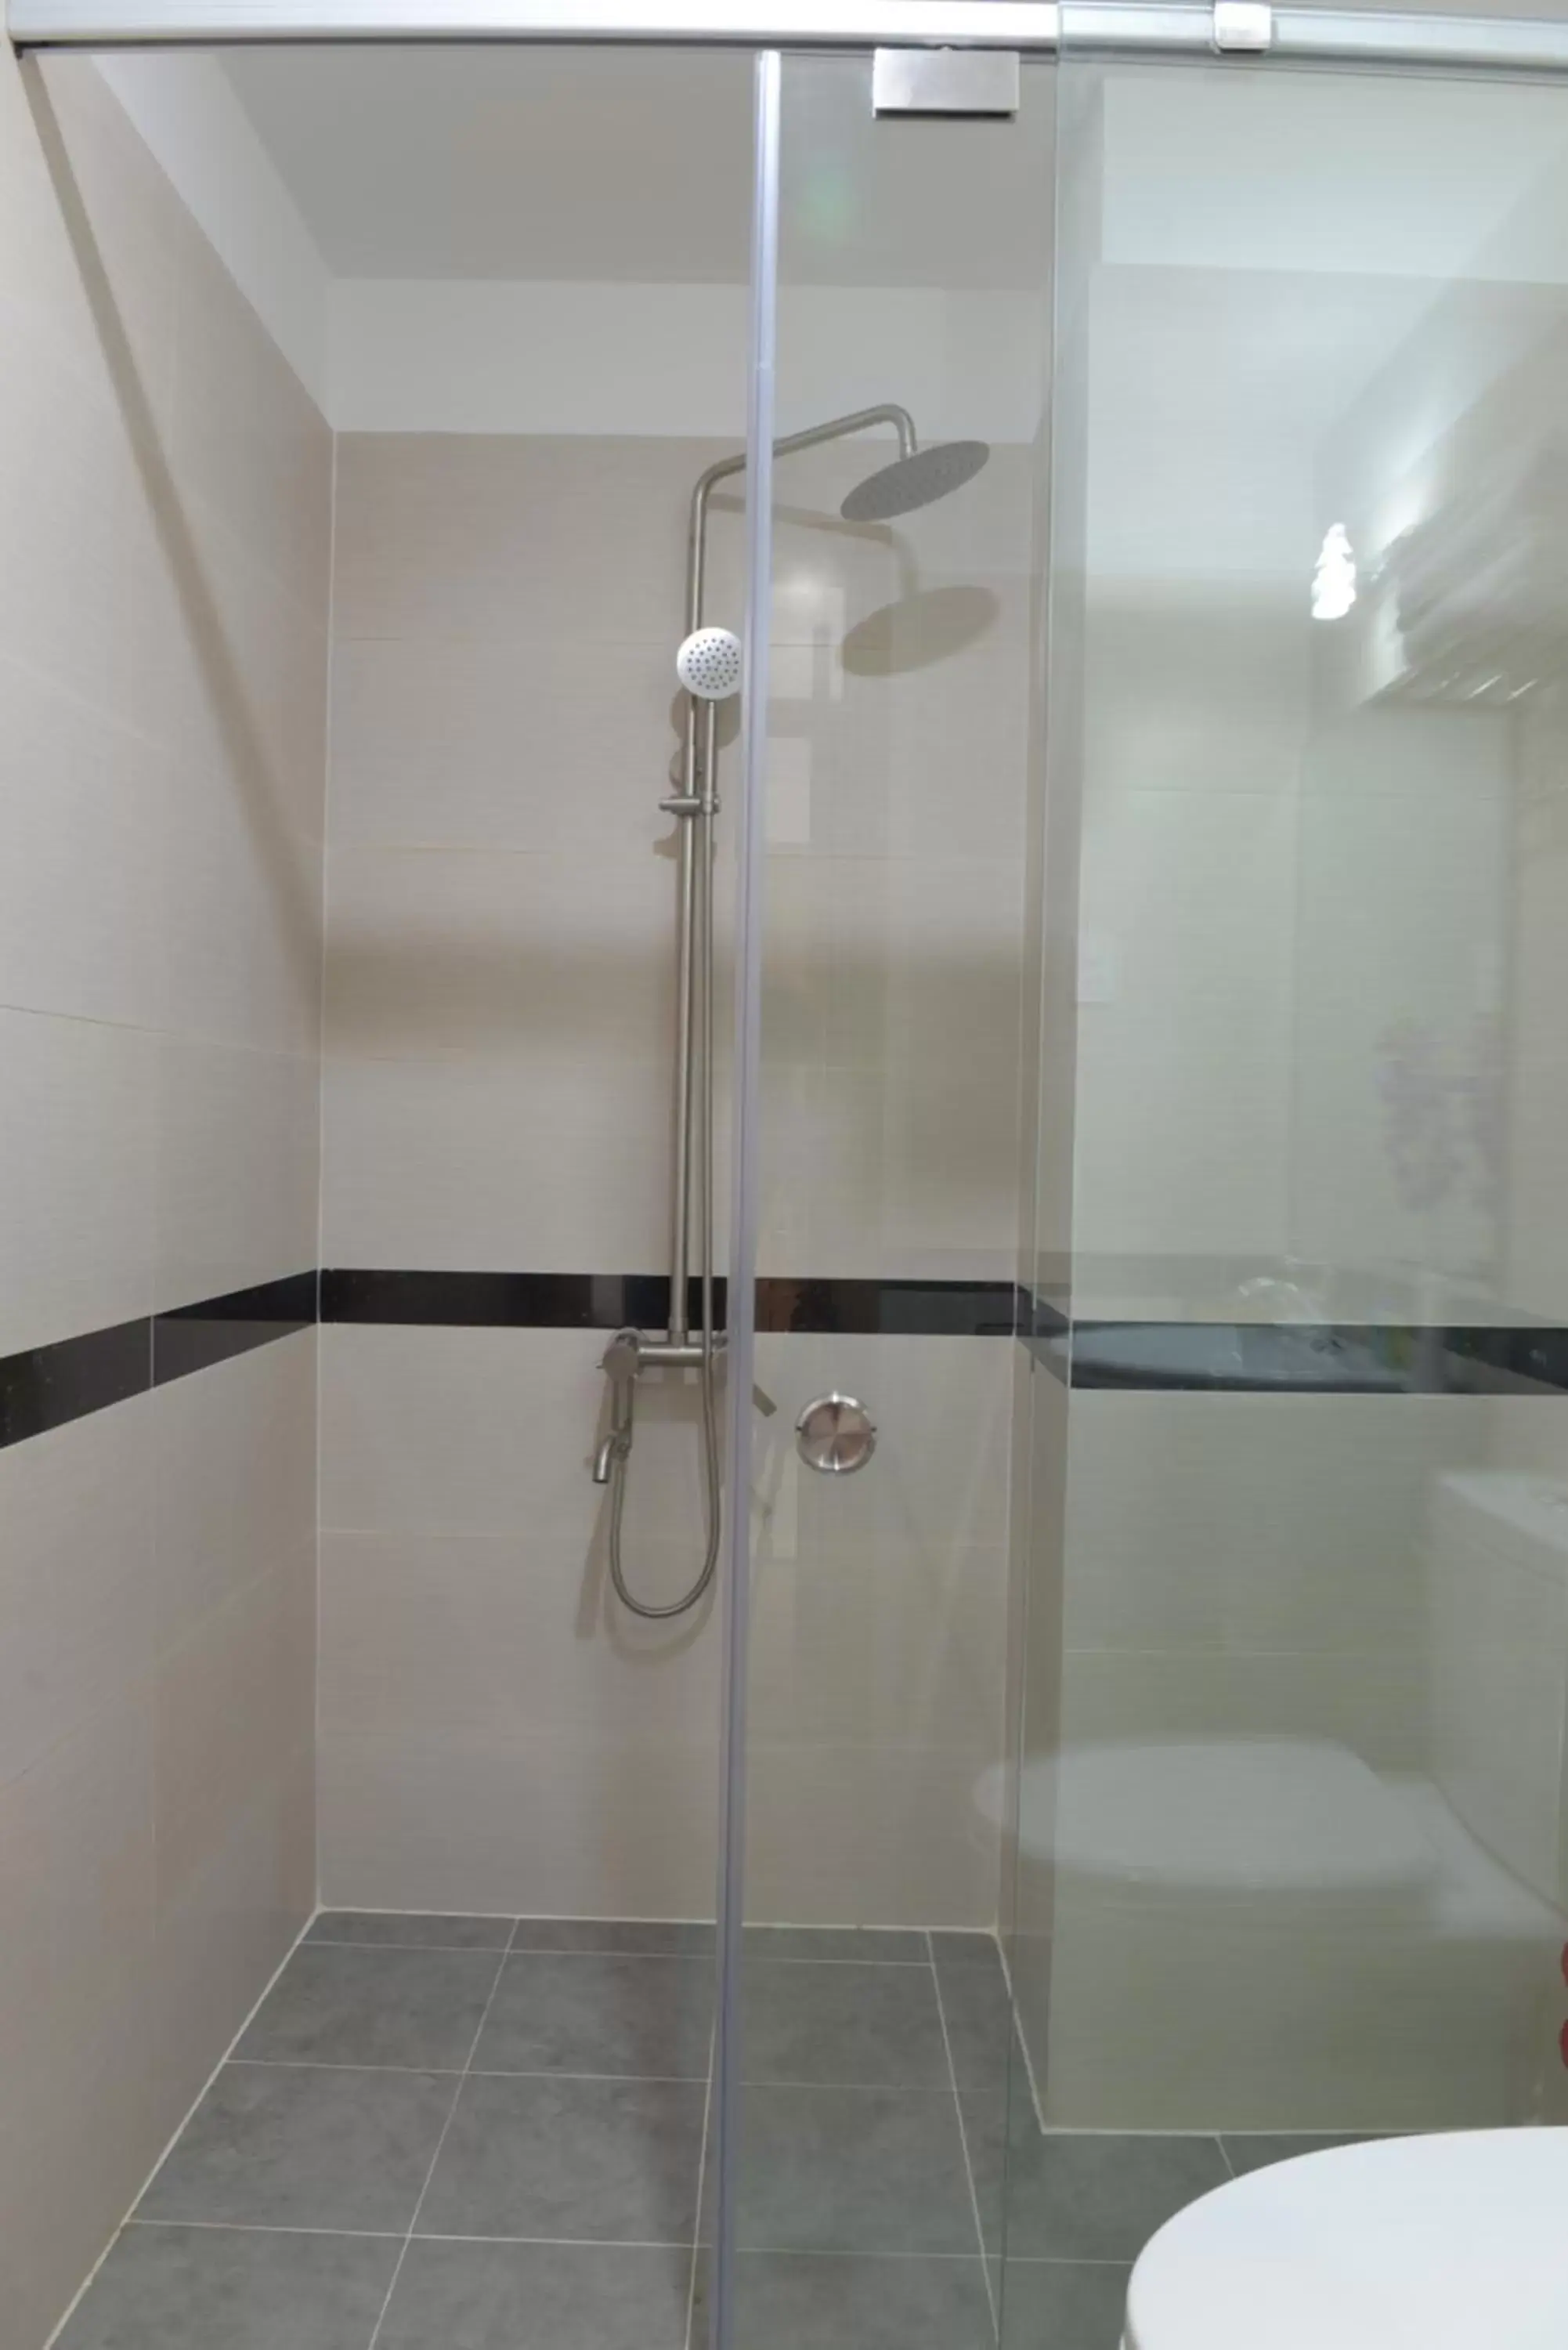 Shower, Bathroom in VeeVoo Hotel